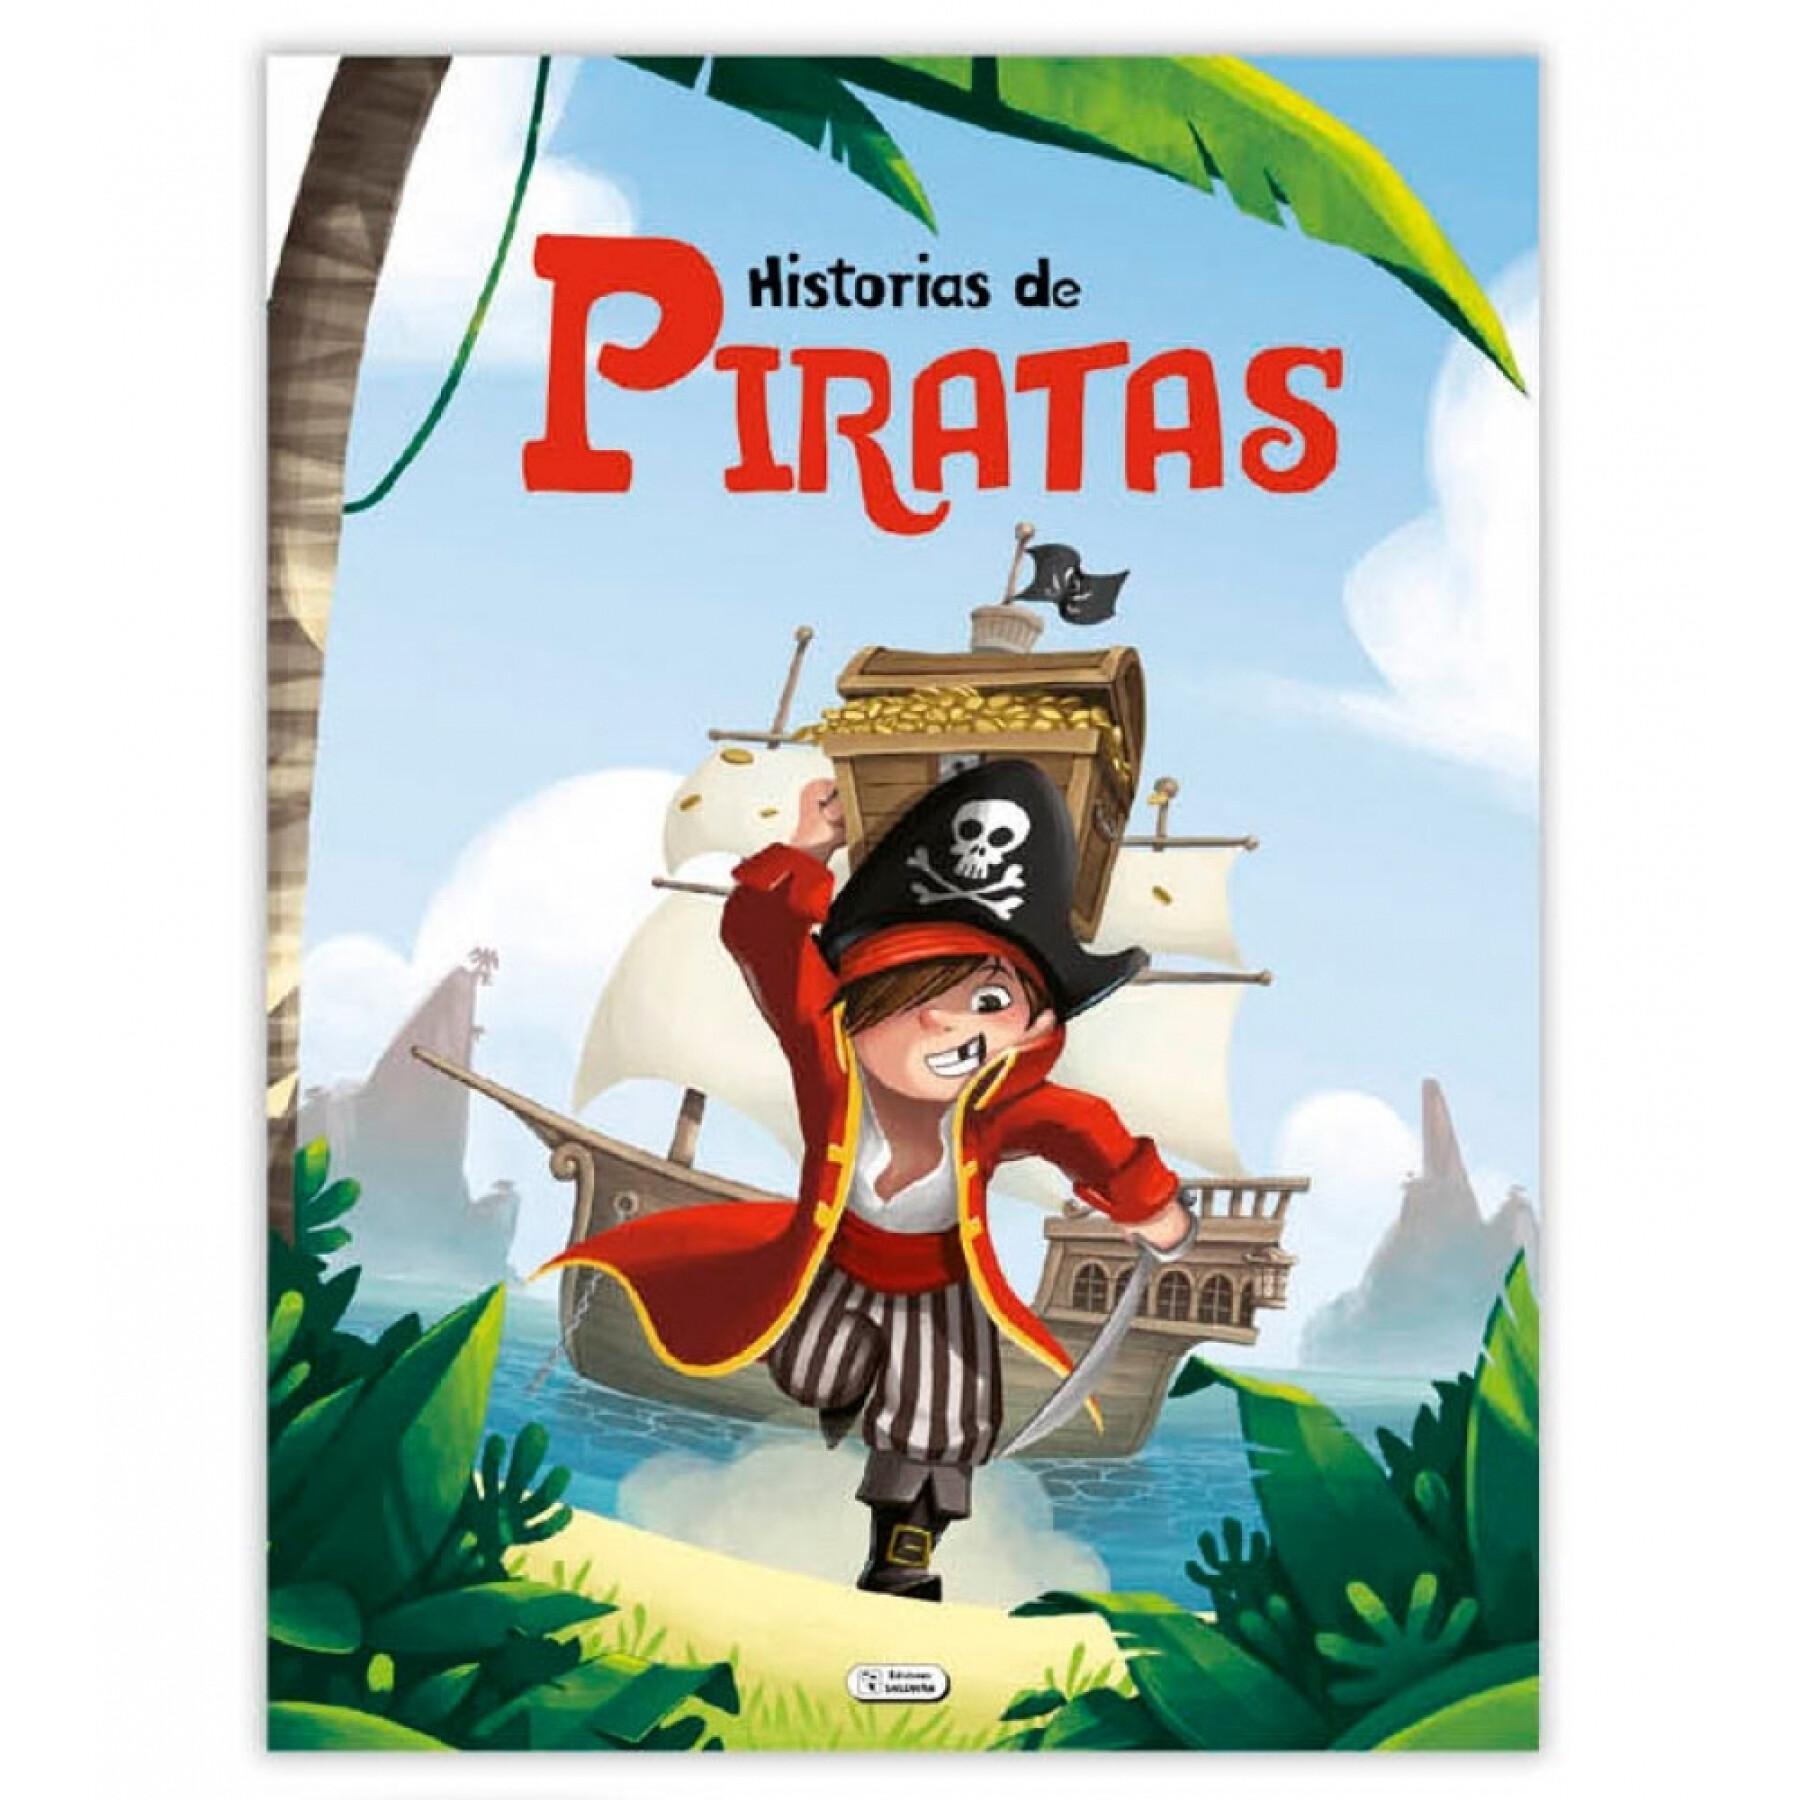 Verhalenboek 120 pagina's verhalen van pirates Ediciones Saldaña